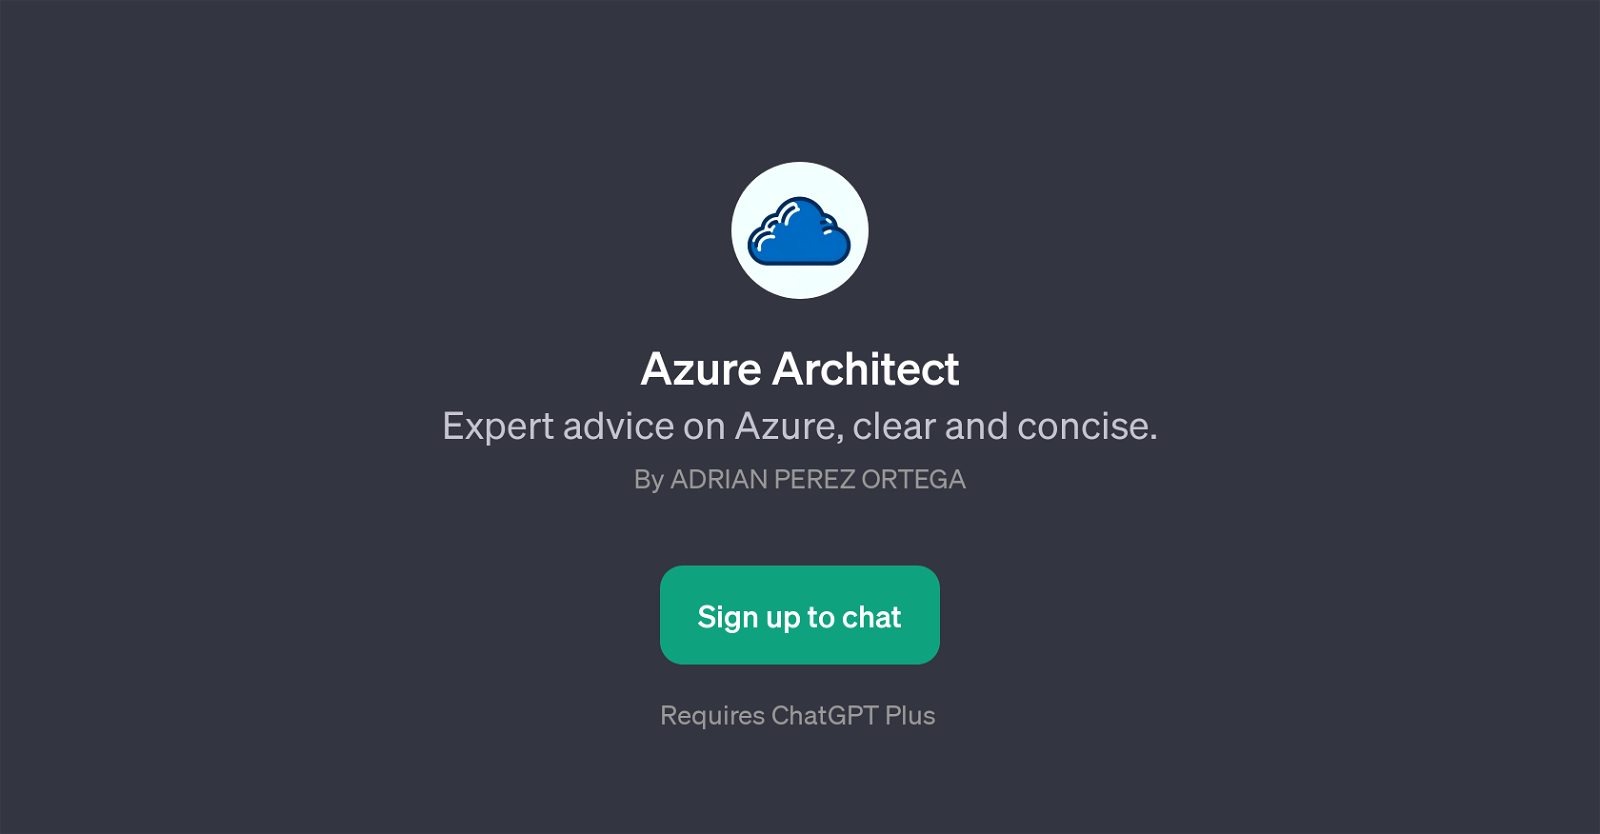 Azure Architect website